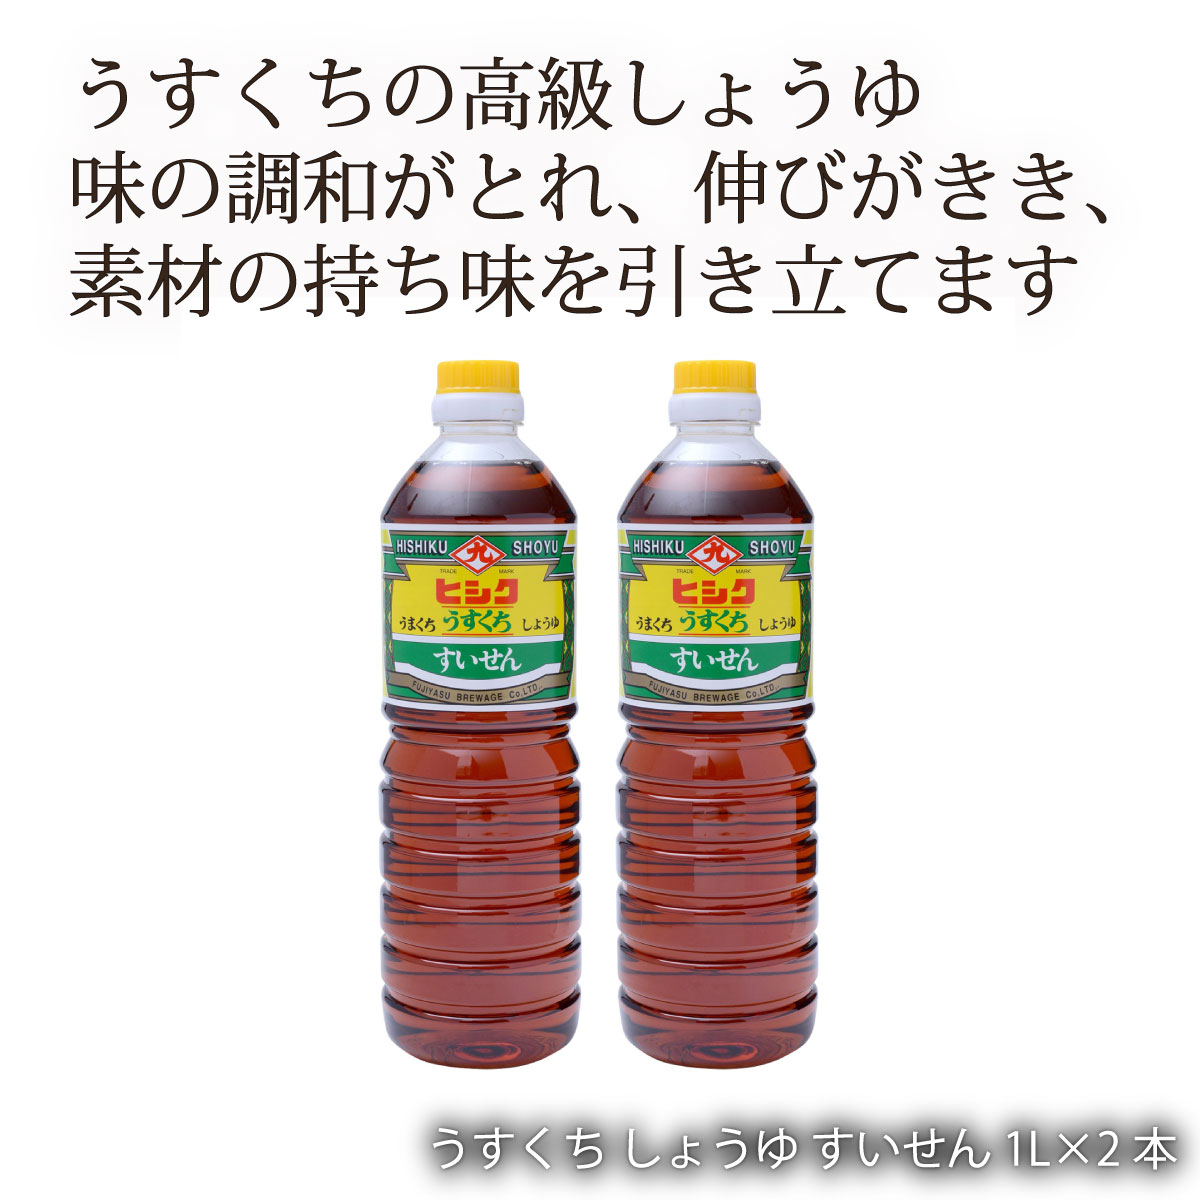 [藤安醸造 ヒシク] 醤油 うすくち しょうゆ すいせん 1L×2本セット /鹿児島 藤安醸醸造 ヒシク しょうゆ 醤油 あまい 甘口